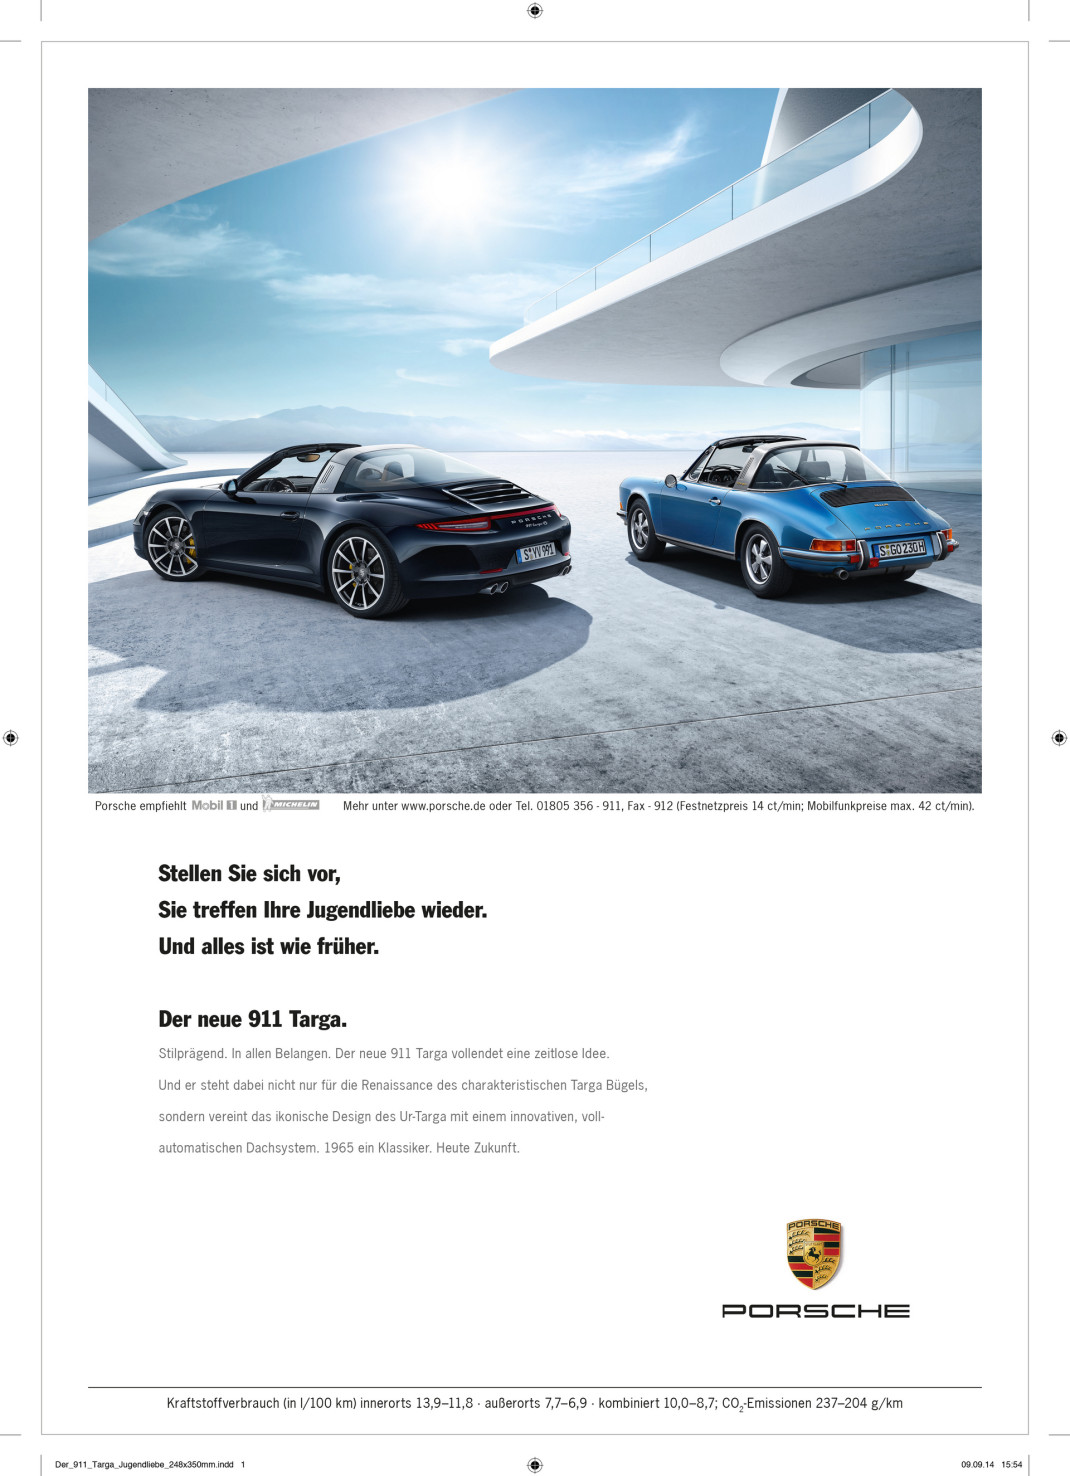 Porsche ad © Dr. Ing. h.c. F. Porsche AG